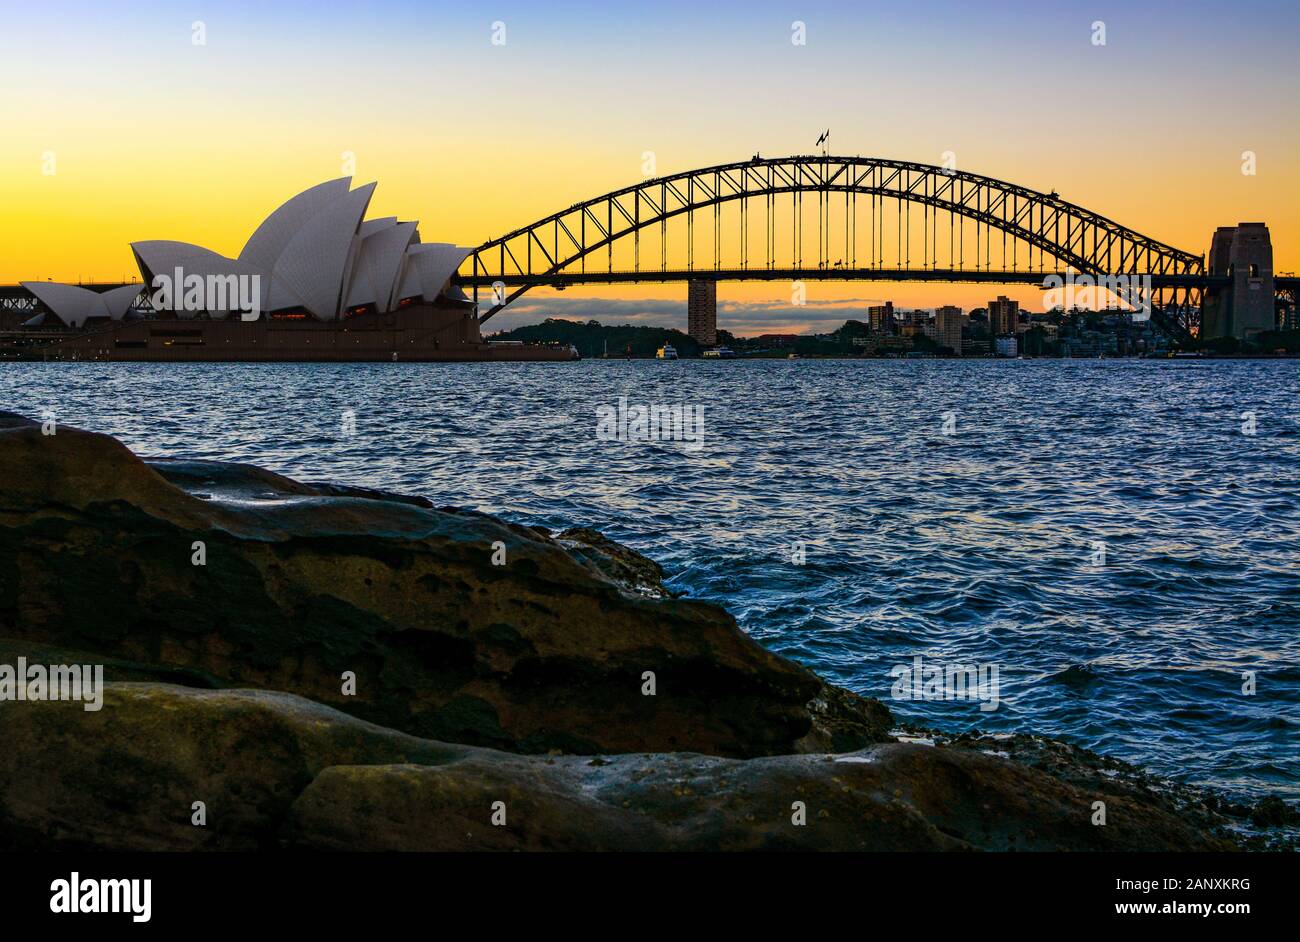 Sydney, AUSTRALIE - 10 MARS 2018 - Opéra de Sydney et Harbour Bridge, les sites emblématiques de la ville, vus du rivage naturel au coucher du soleil Banque D'Images